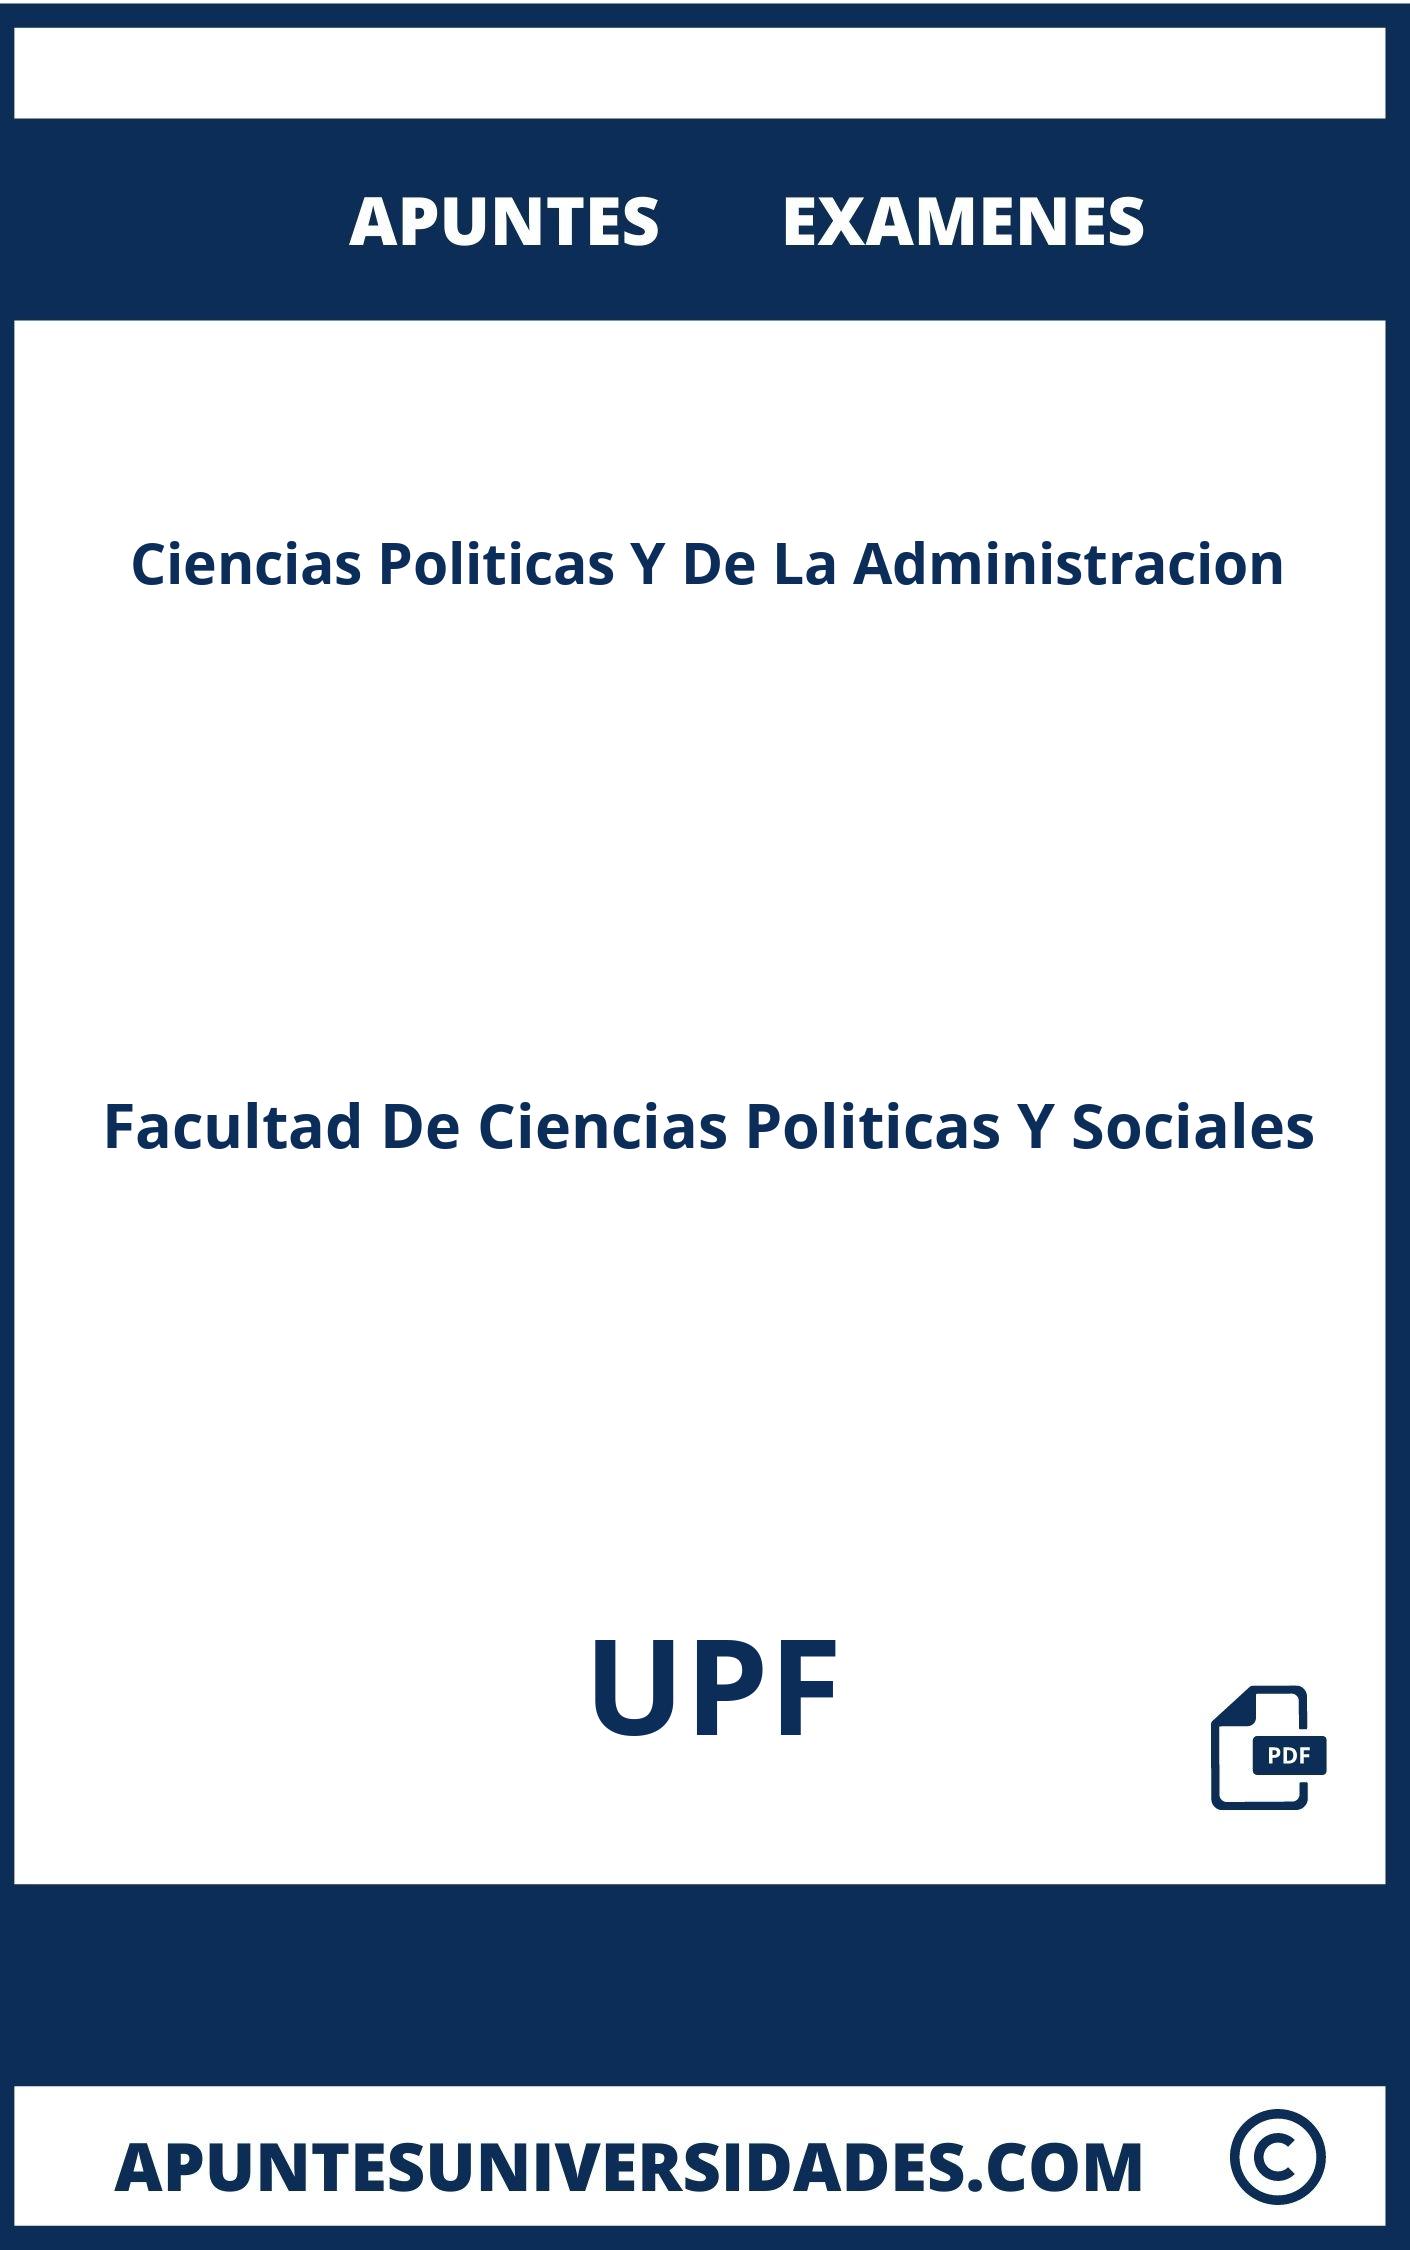 Apuntes y Examenes Ciencias Politicas Y De La Administracion UPF